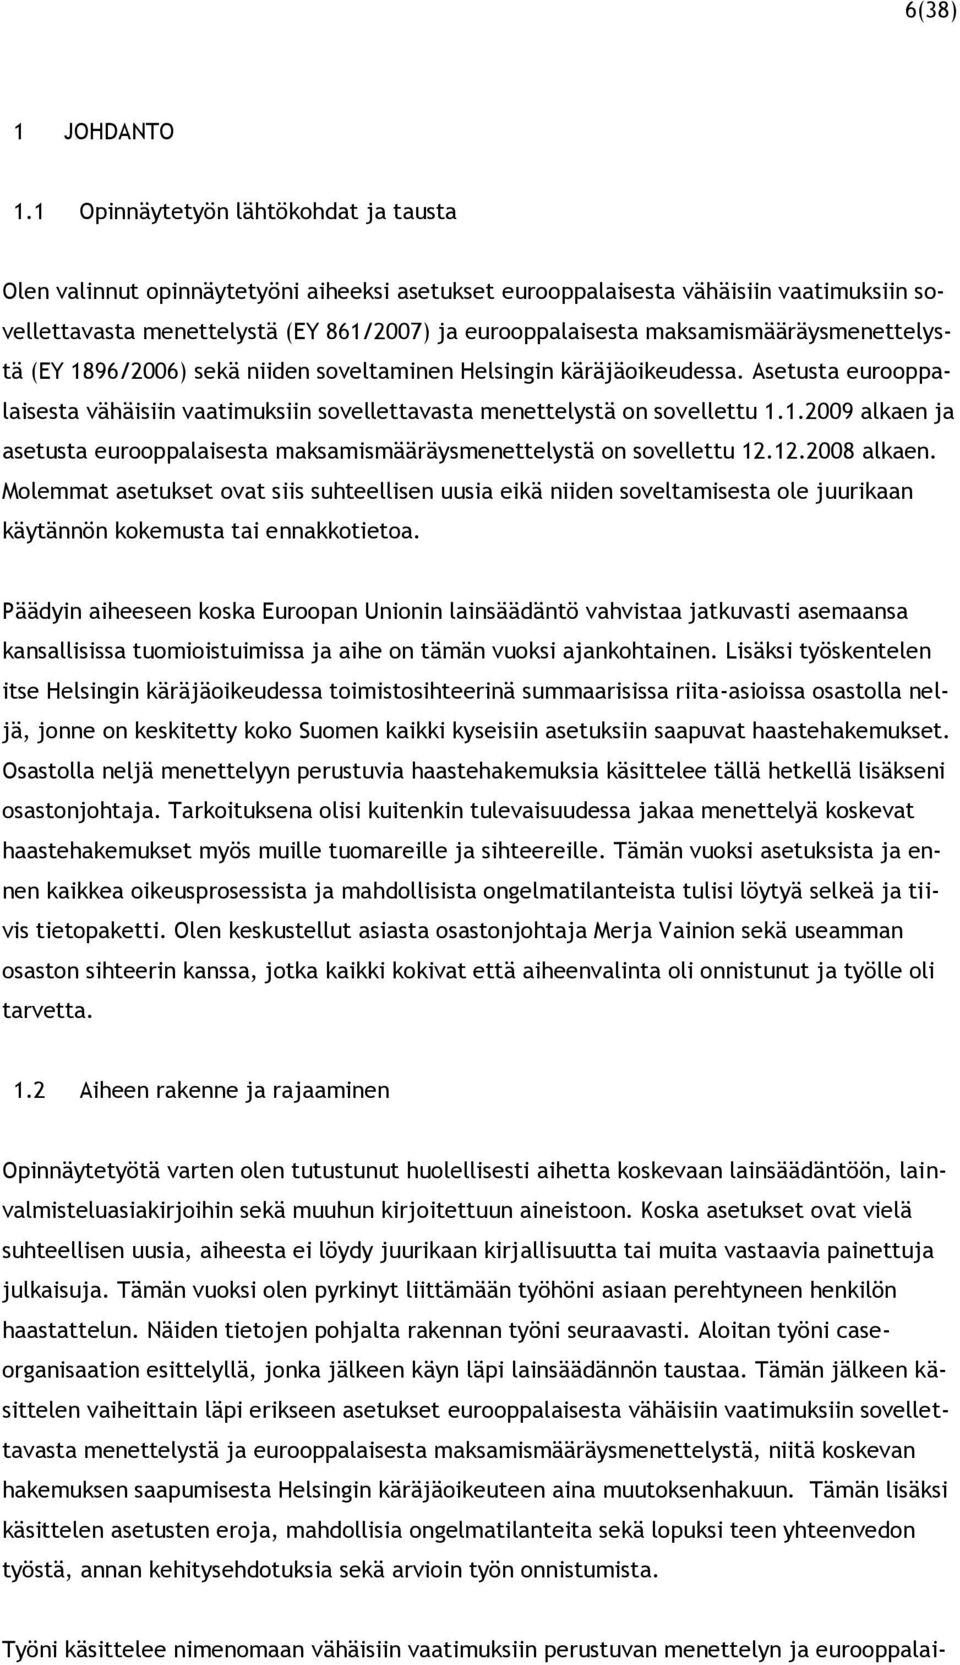 maksamismääräysmenettelystä (EY 1896/2006) sekä niiden soveltaminen Helsingin käräjäoikeudessa. Asetusta eurooppalaisesta vähäisiin vaatimuksiin sovellettavasta menettelystä on sovellettu 1.1.2009 alkaen ja asetusta eurooppalaisesta maksamismääräysmenettelystä on sovellettu 12.